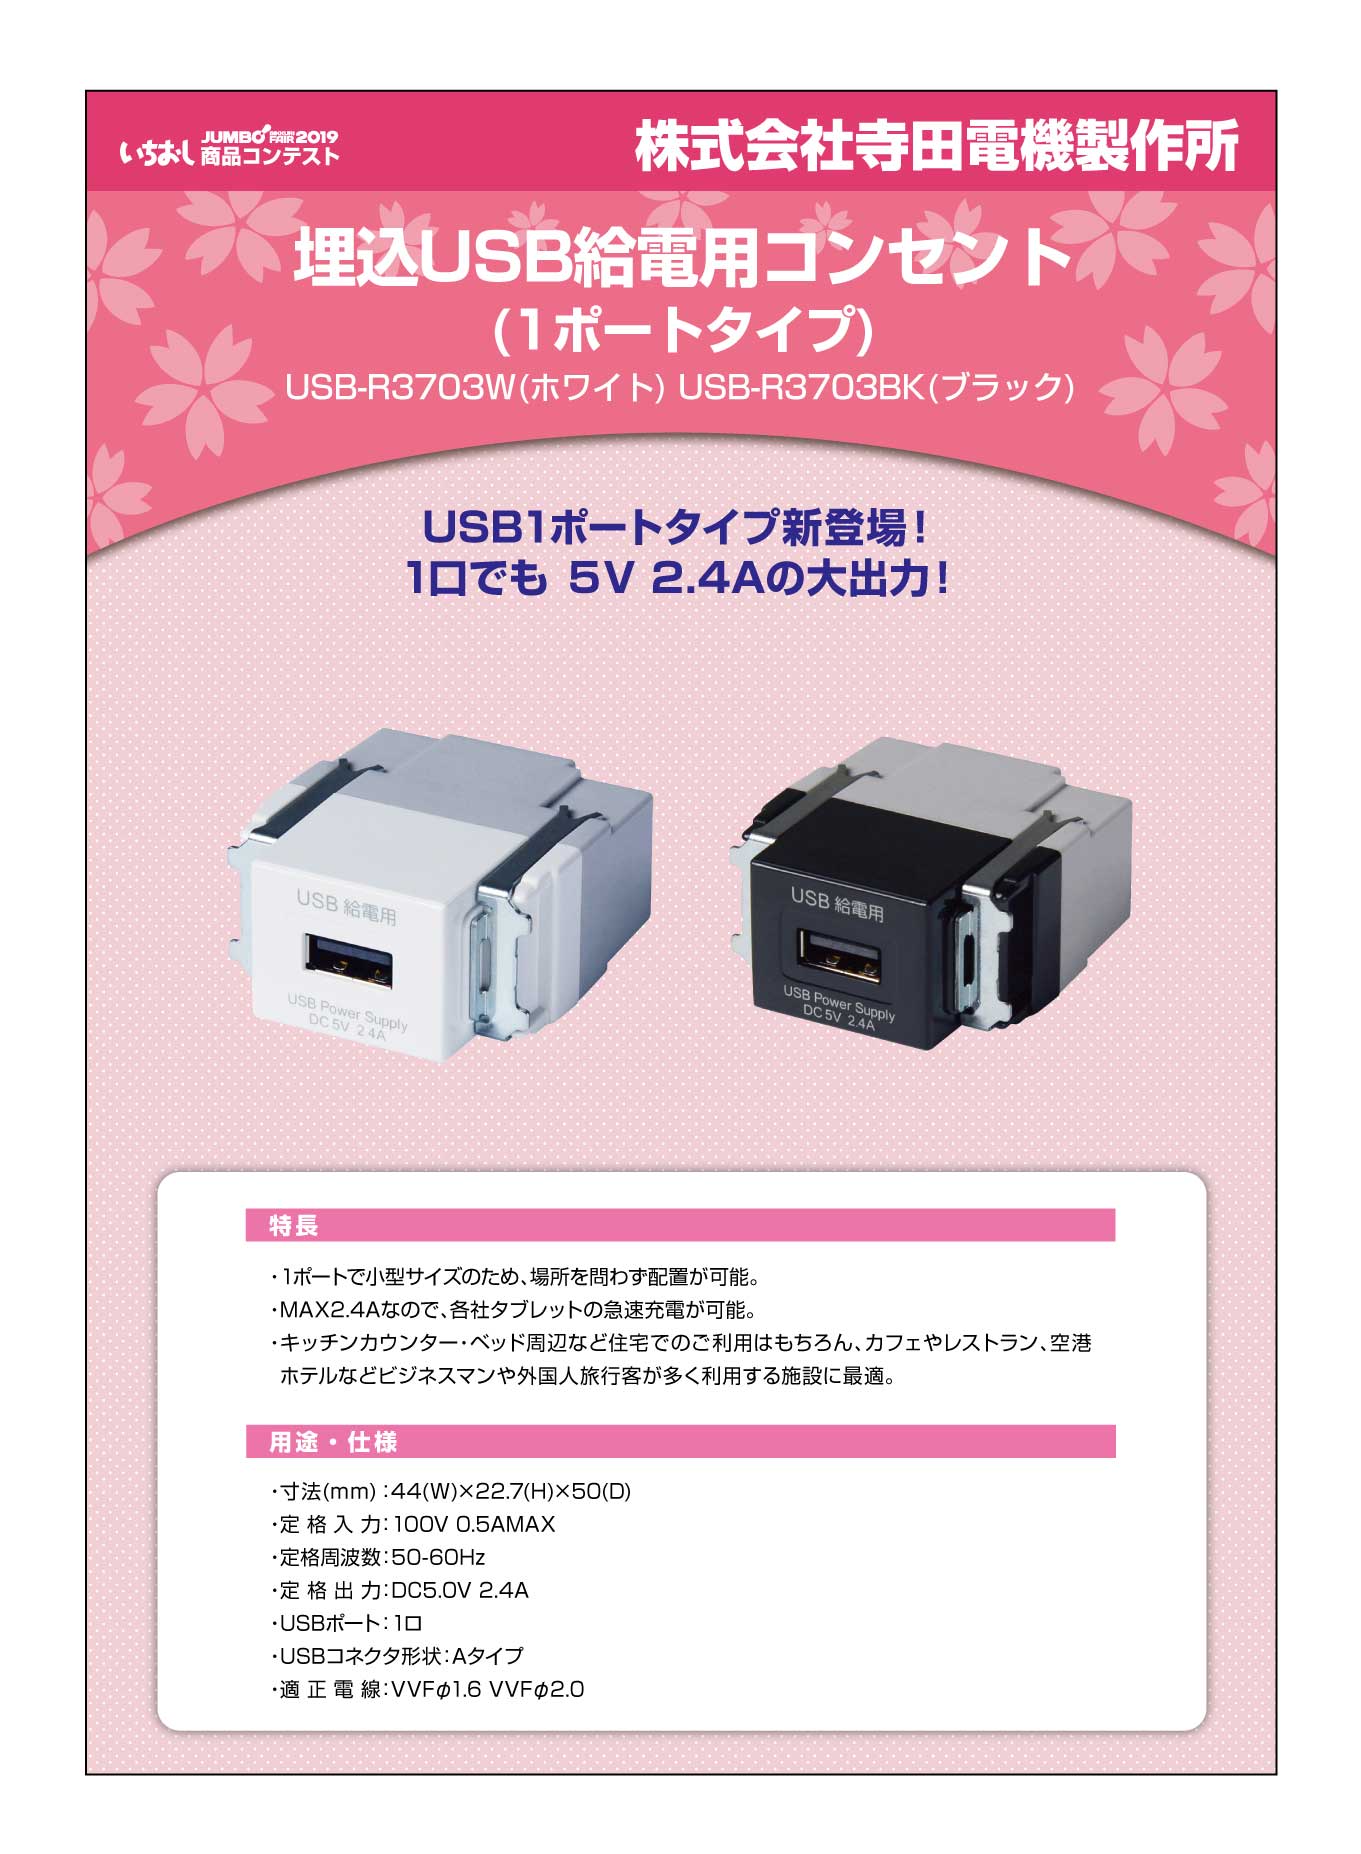 「埋込USB給電用コンセント(1ポートタイプ)」株式会社寺田電機製作所の画像